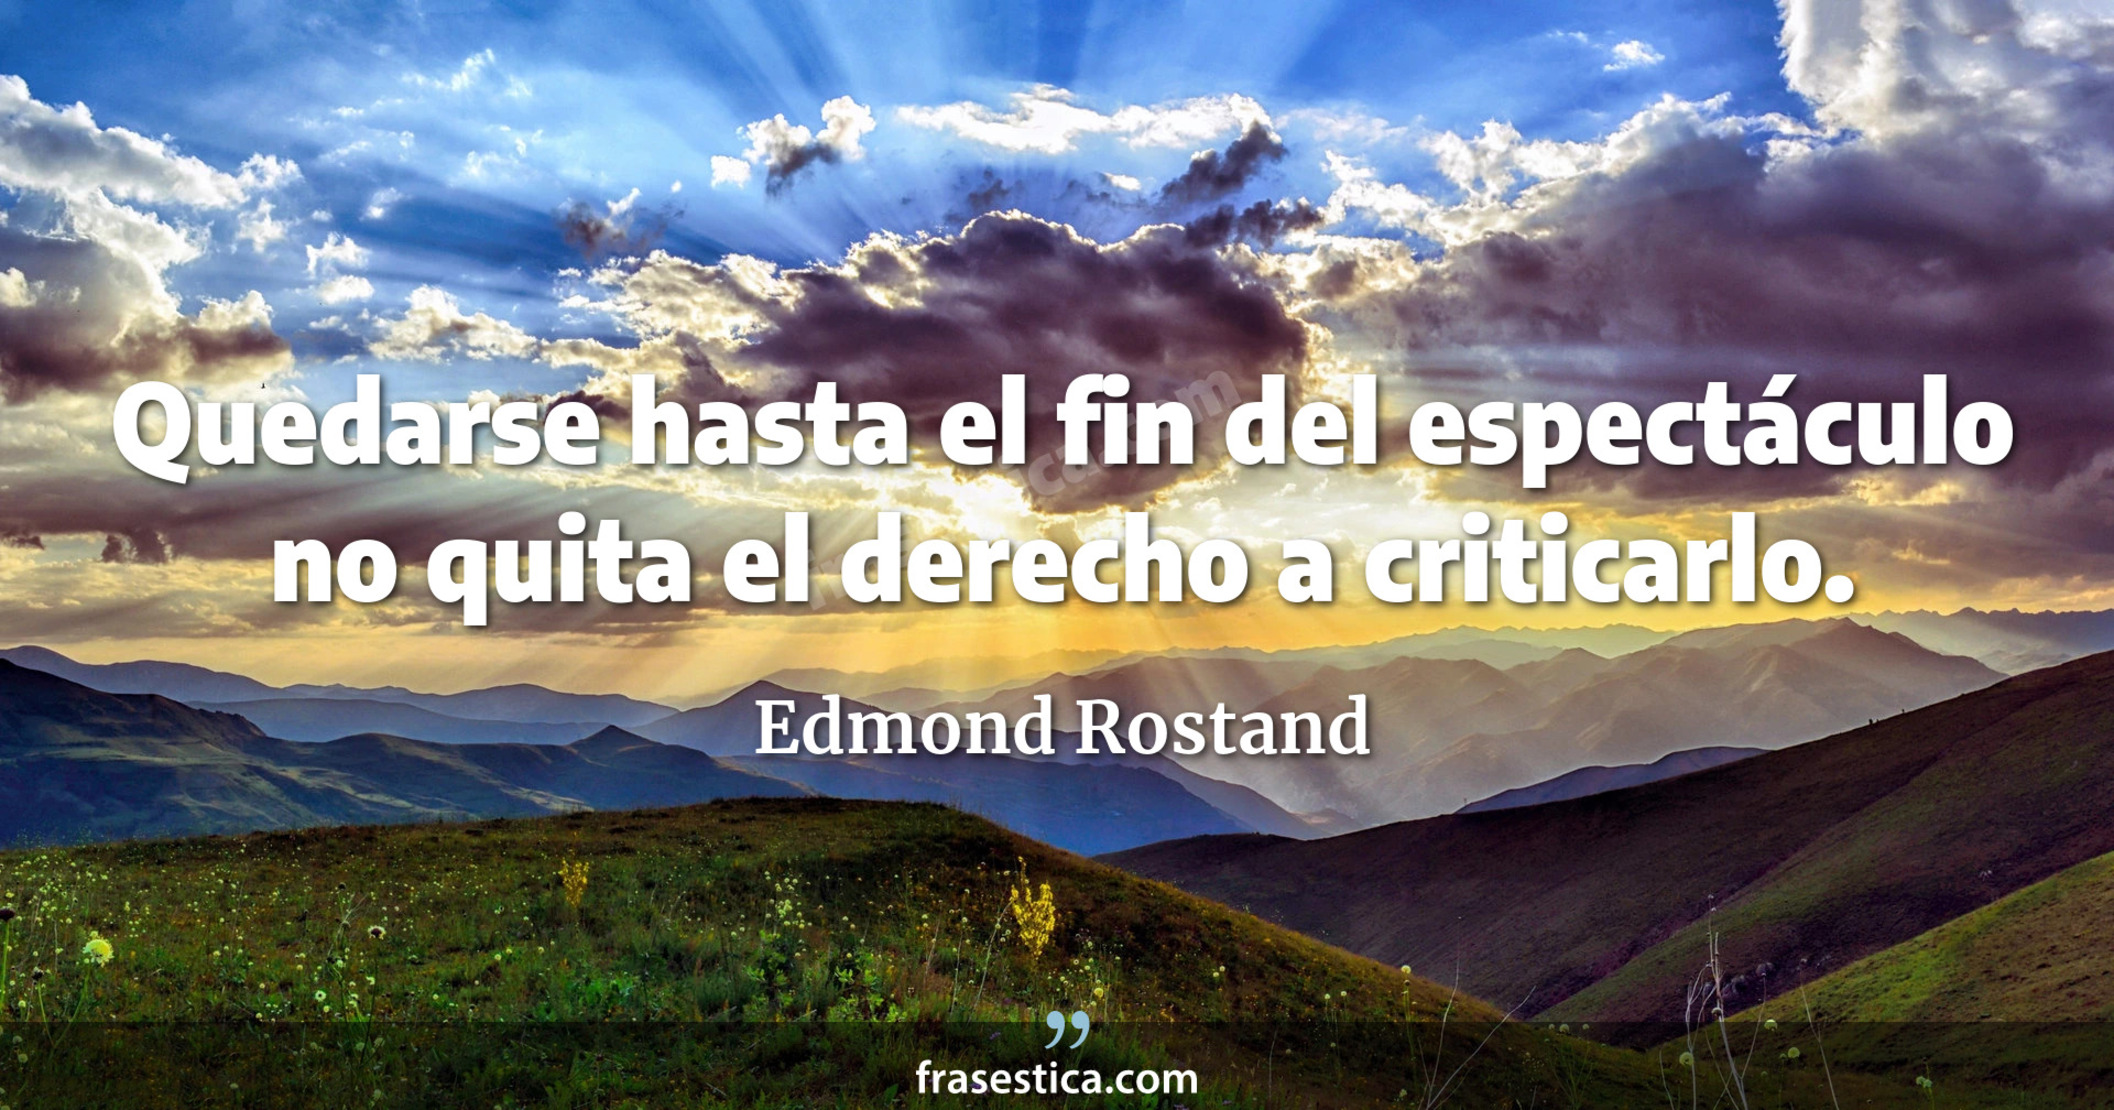 Quedarse hasta el fin del espectáculo no quita el derecho a criticarlo. - Edmond Rostand